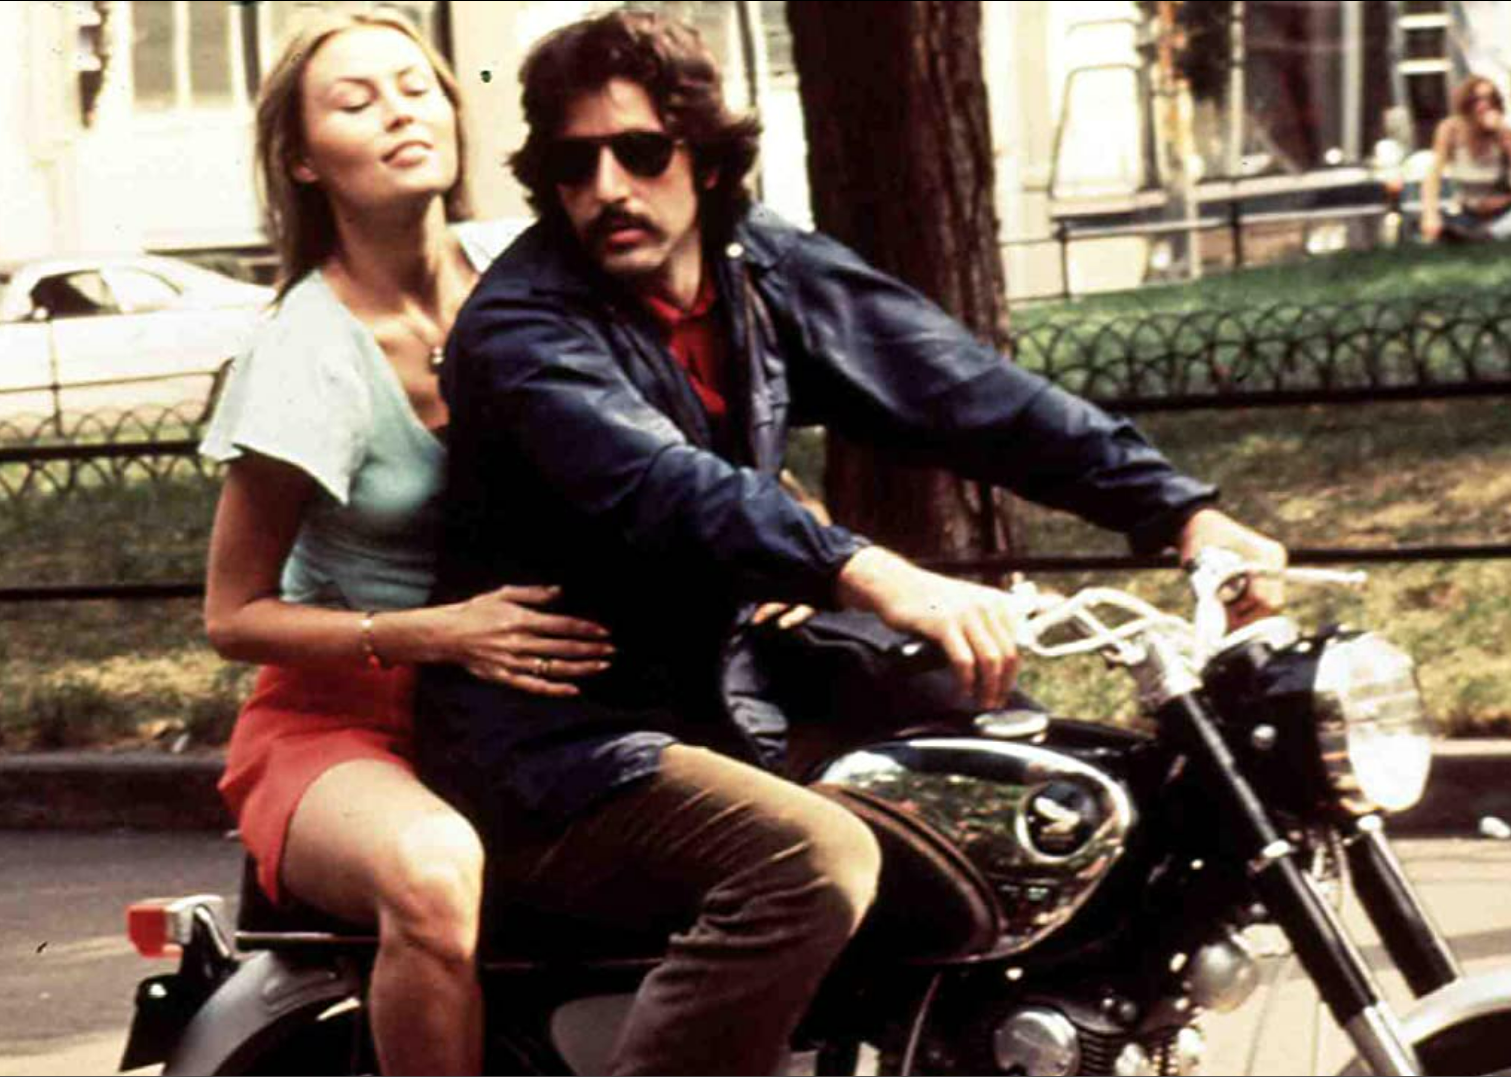 Al Pacino and Cornelia Sharpe in a scene from "Serpico".